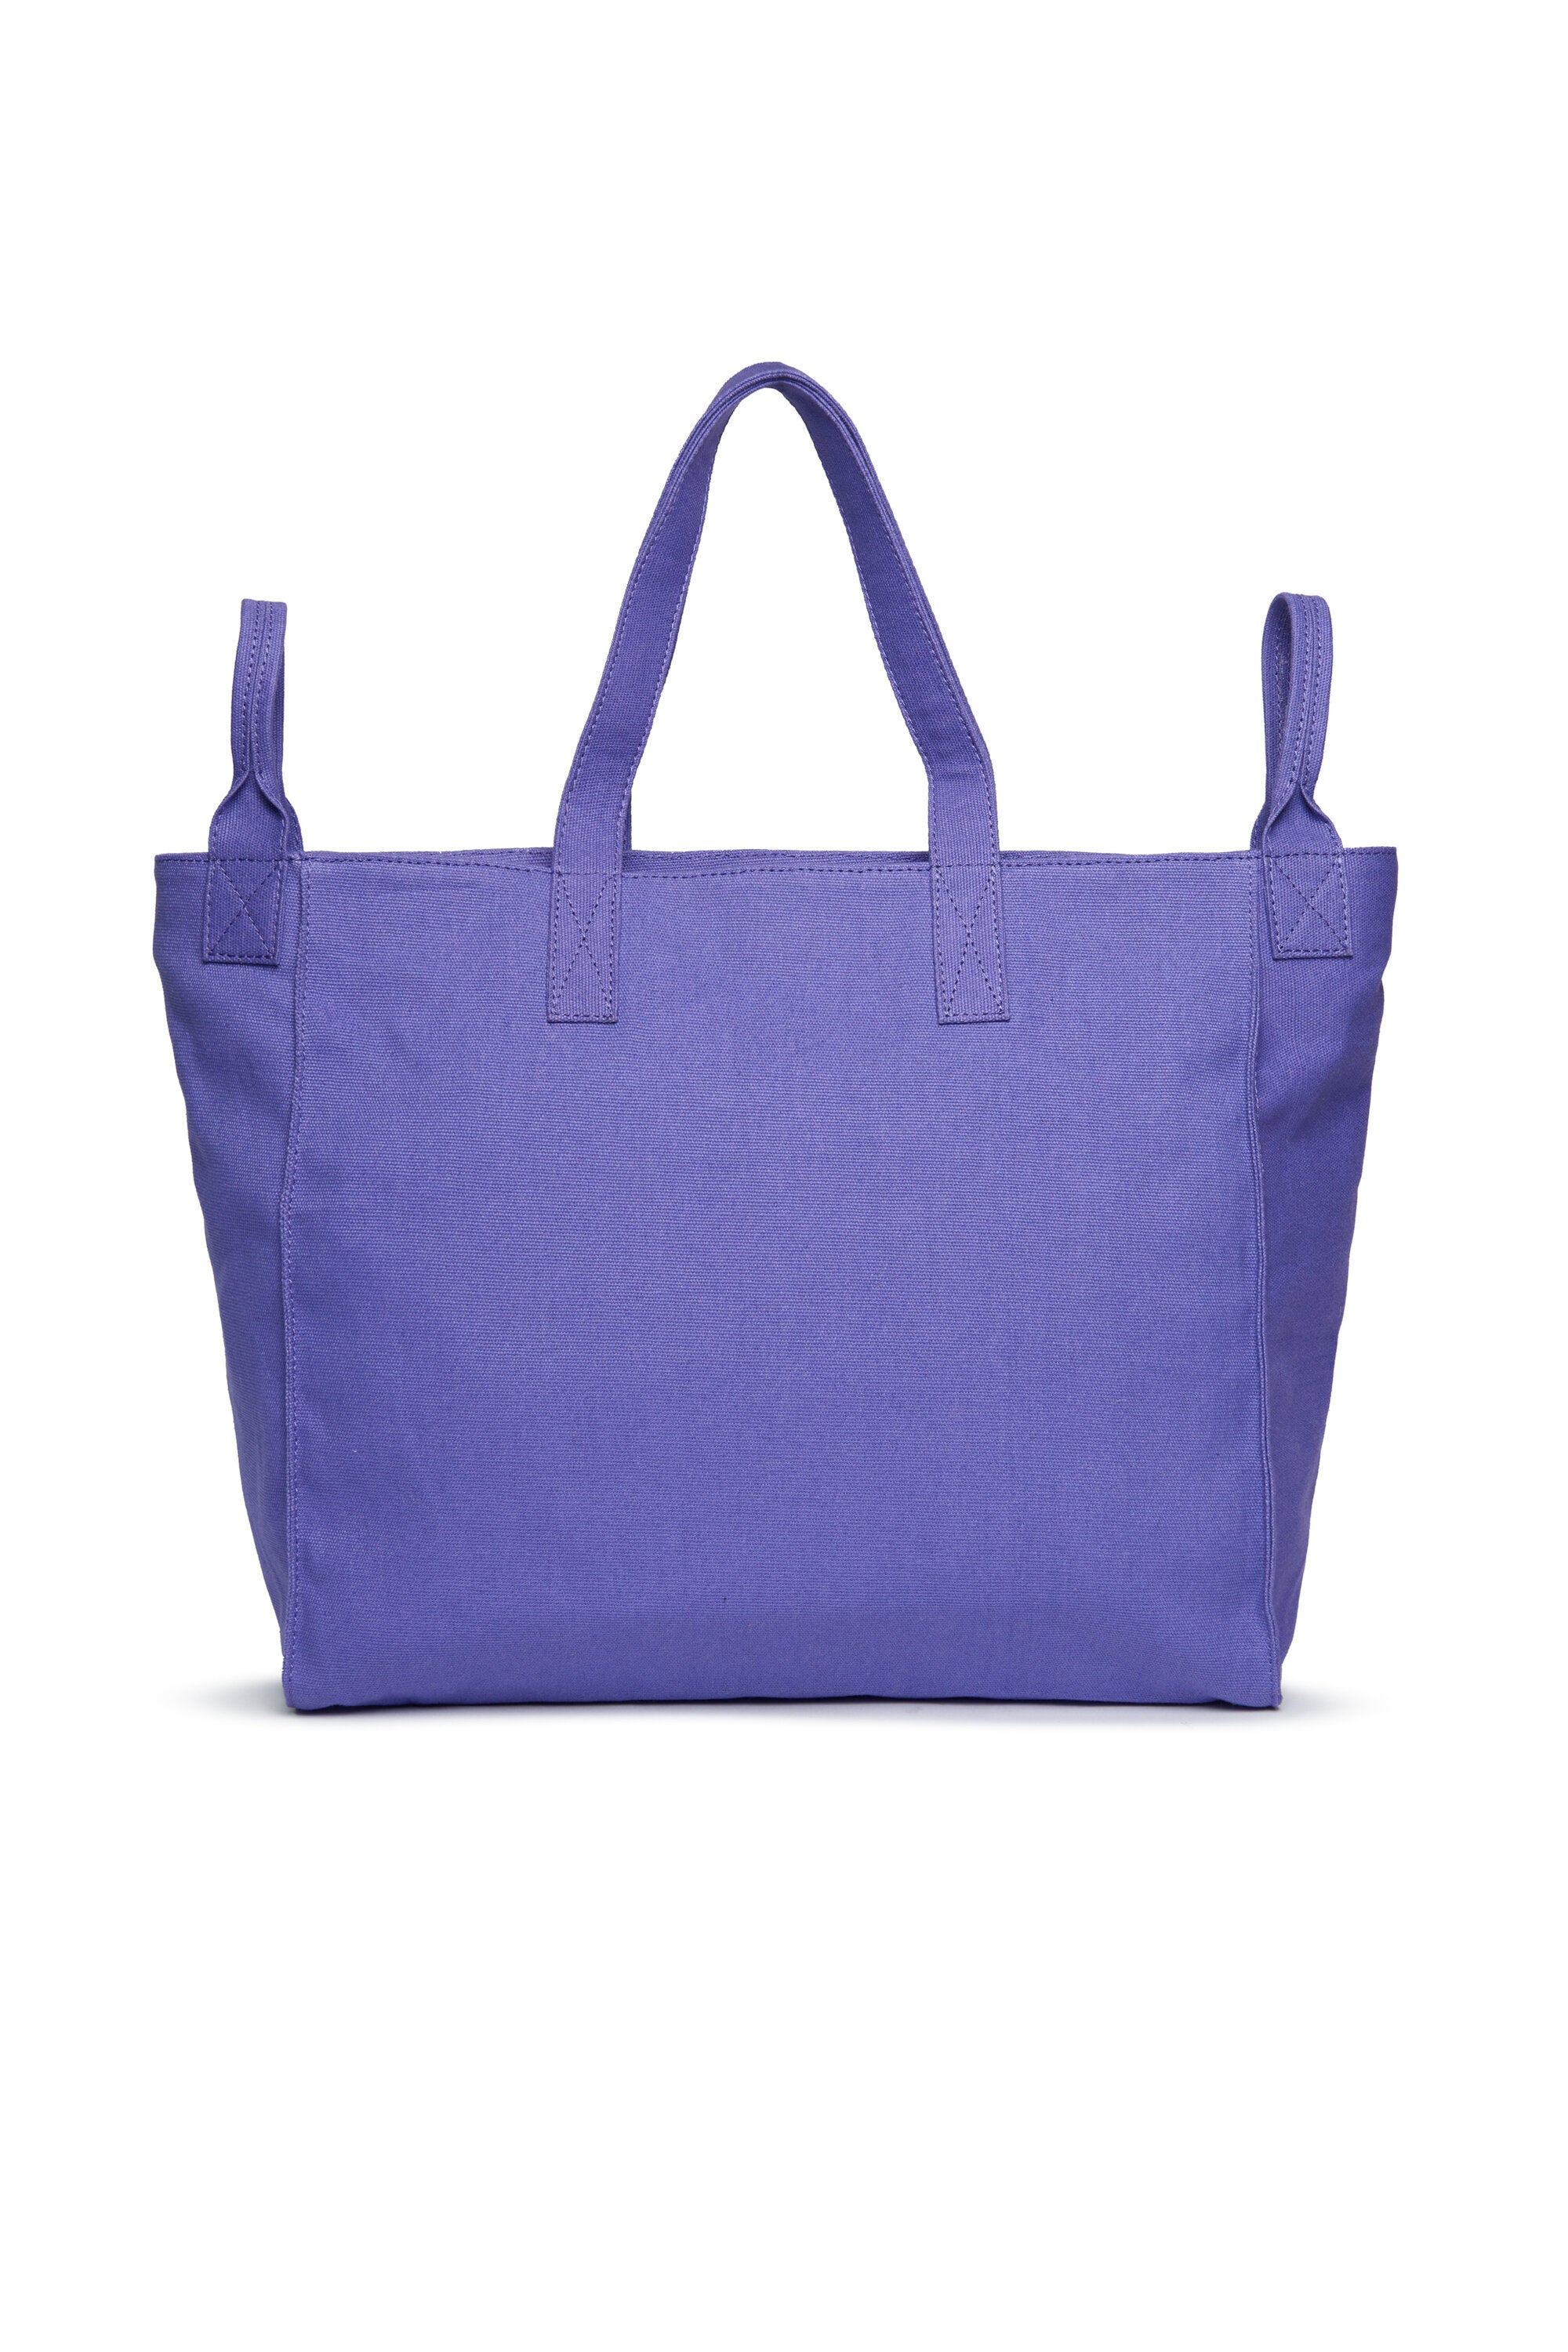 Branded canvas shopper bag